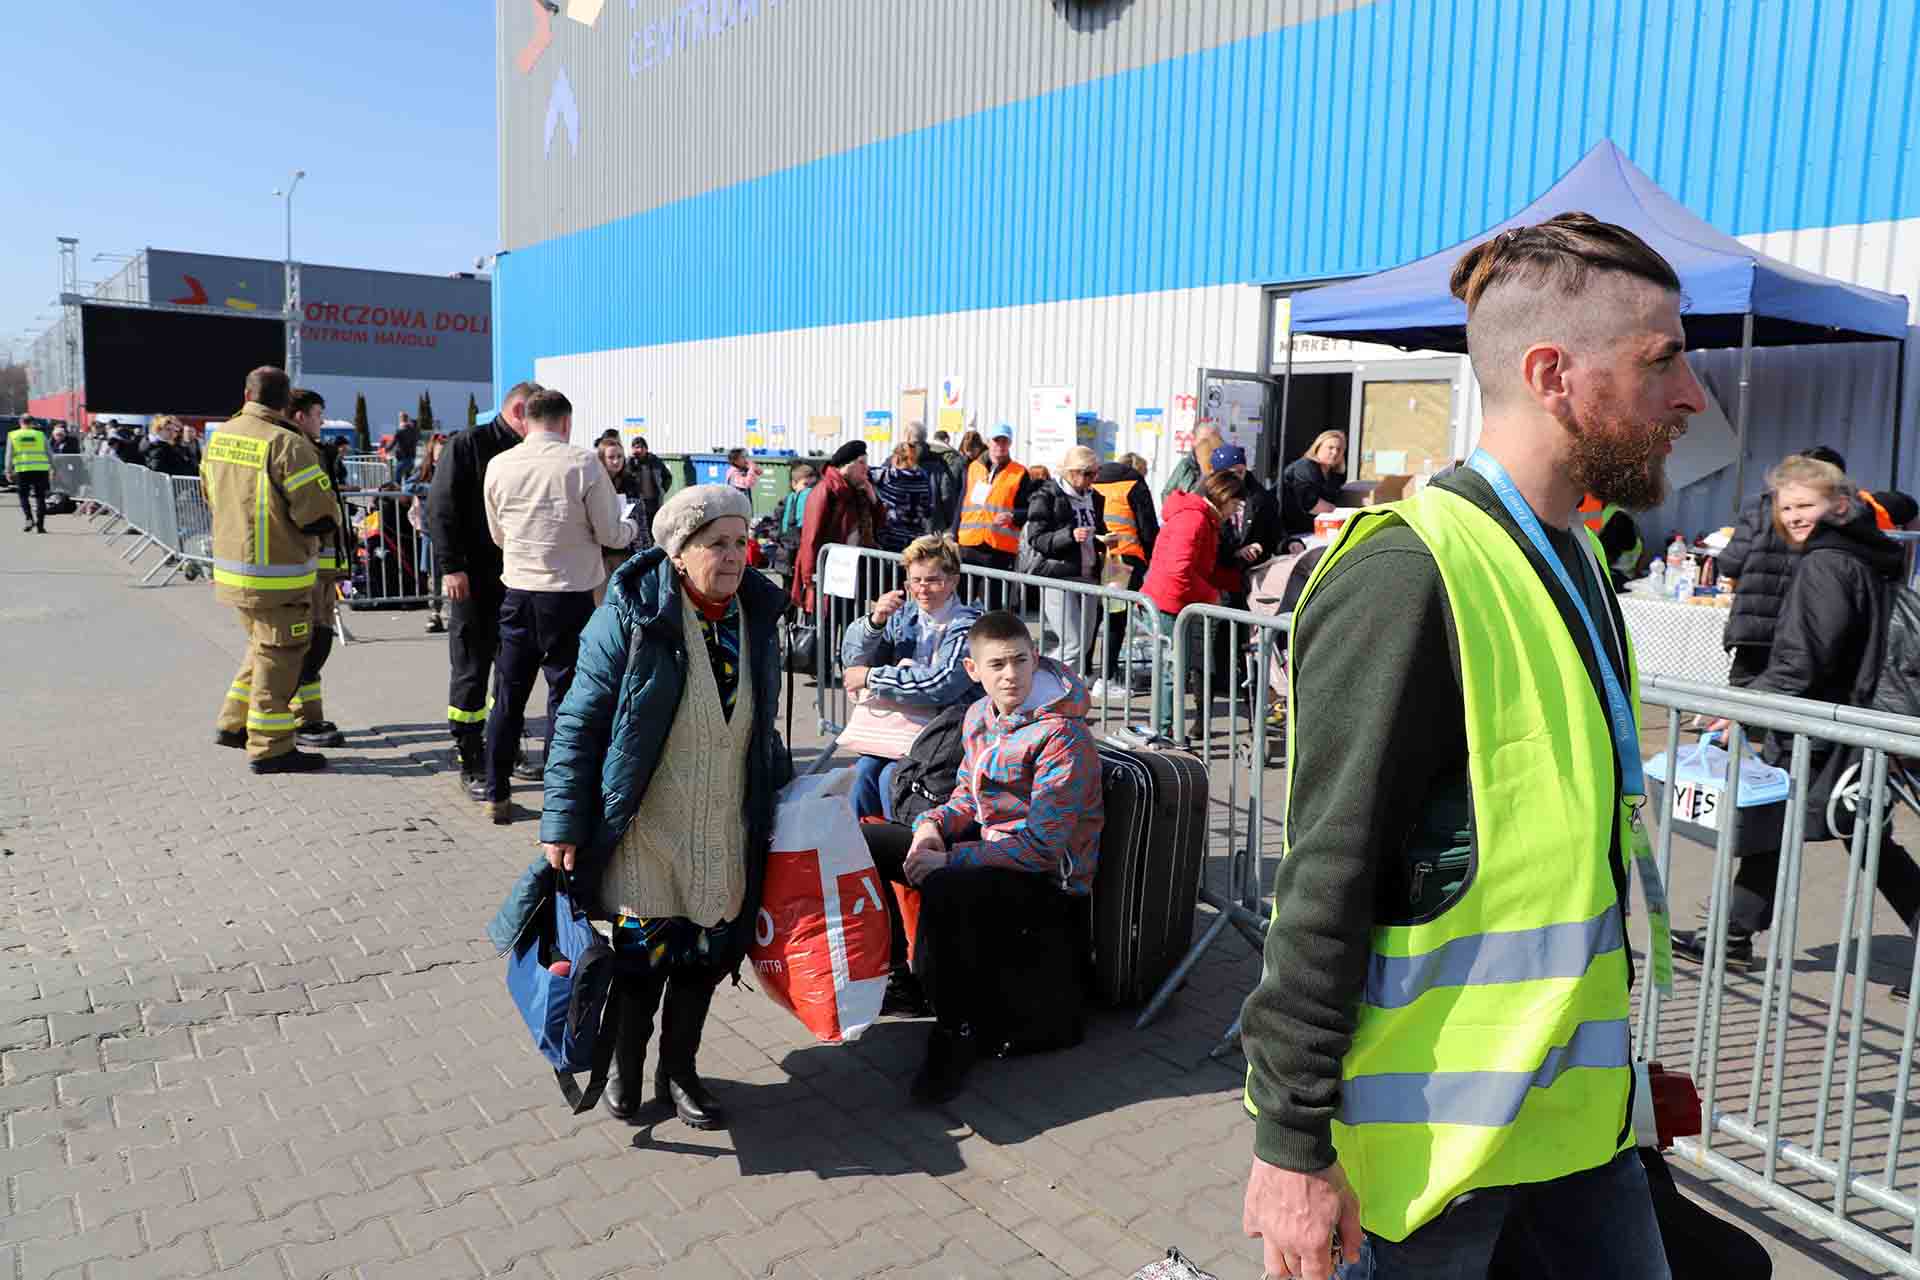 Una mujer parte desde el centro comercial habilitado para acoger a refugiados Korczowa Dolina Centrum, en Polonia, a escasos minutos de la frontera con Ucrania en Medyka / Foto: FFM - EA